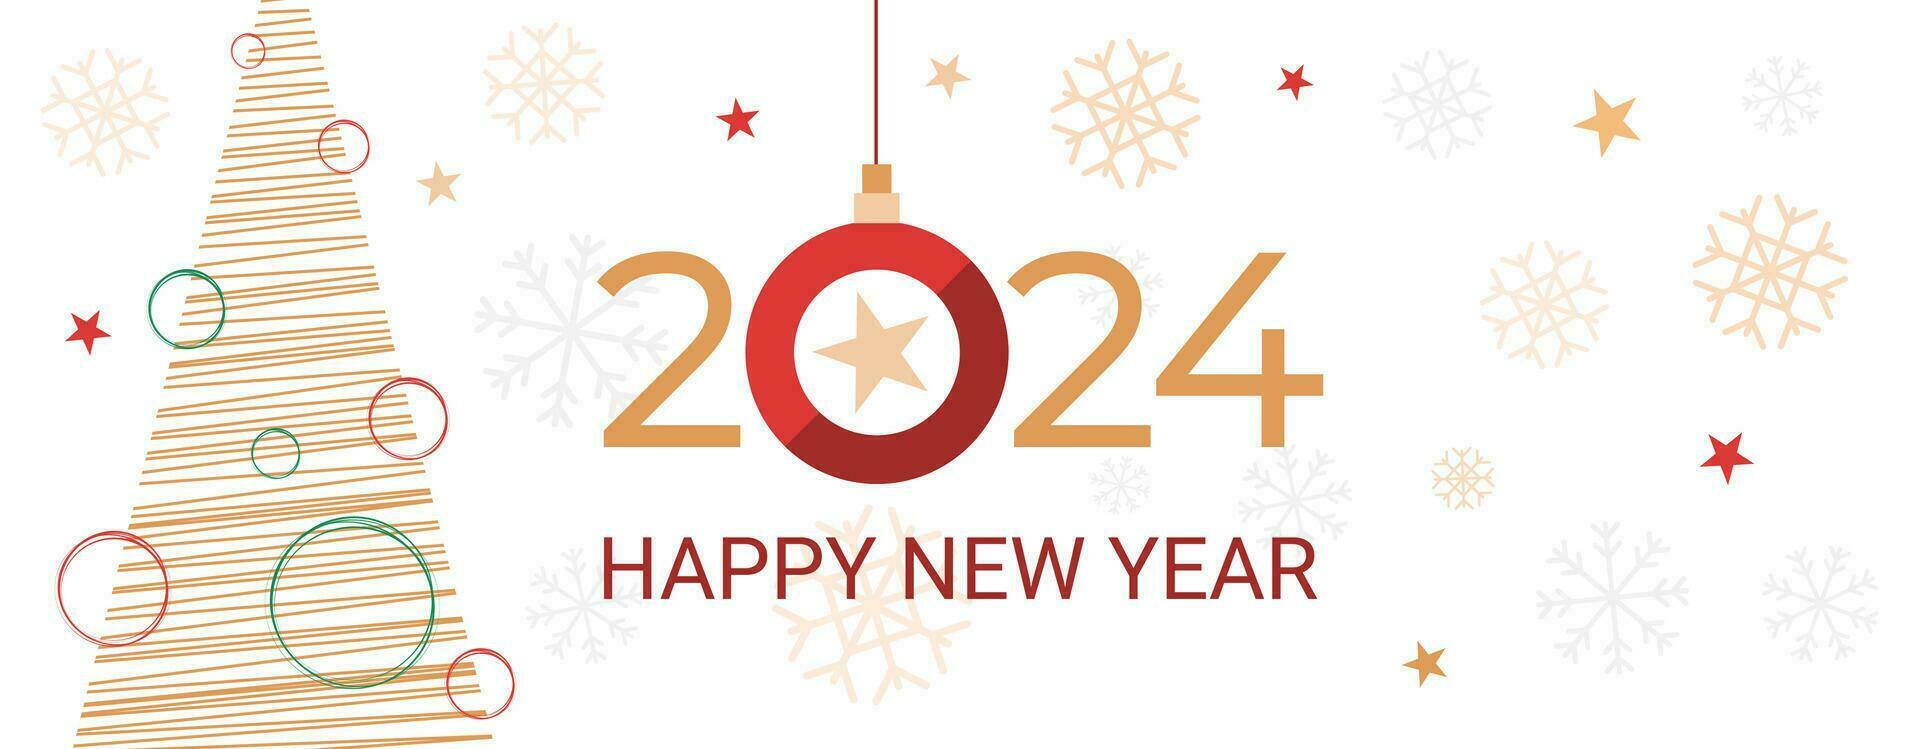 2024 nuevo año bandera, saludo, fiesta invitación, gráfico modelo con plano abeto árbol, texto saludo, estrellas y copos de nieve decoraciones fiesta antecedentes vector ilustración.